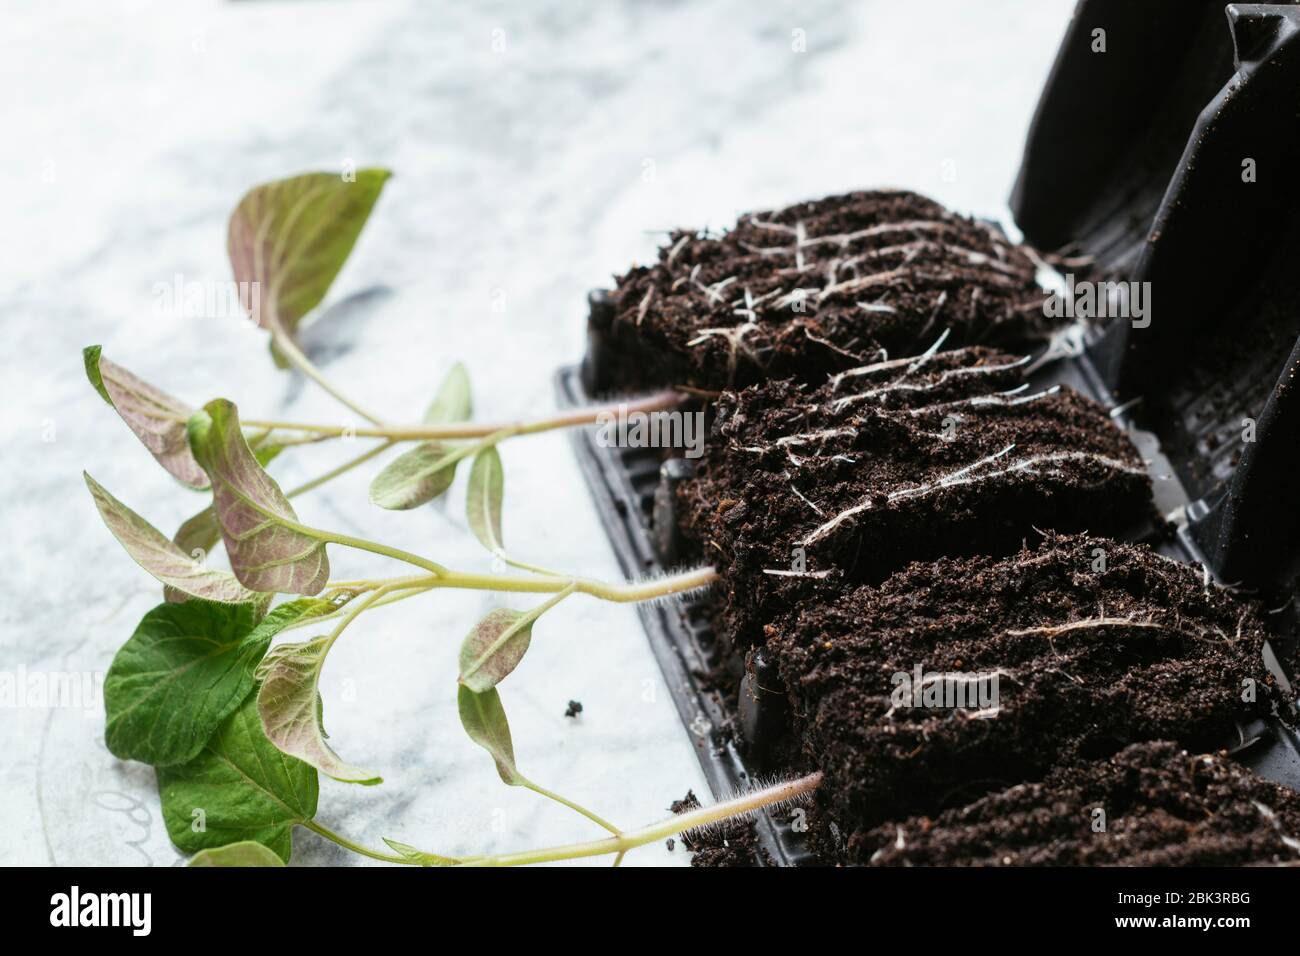 Plántulas de tomate jóvenes (variedad Tamina) en un formador de raíces. Foto de stock